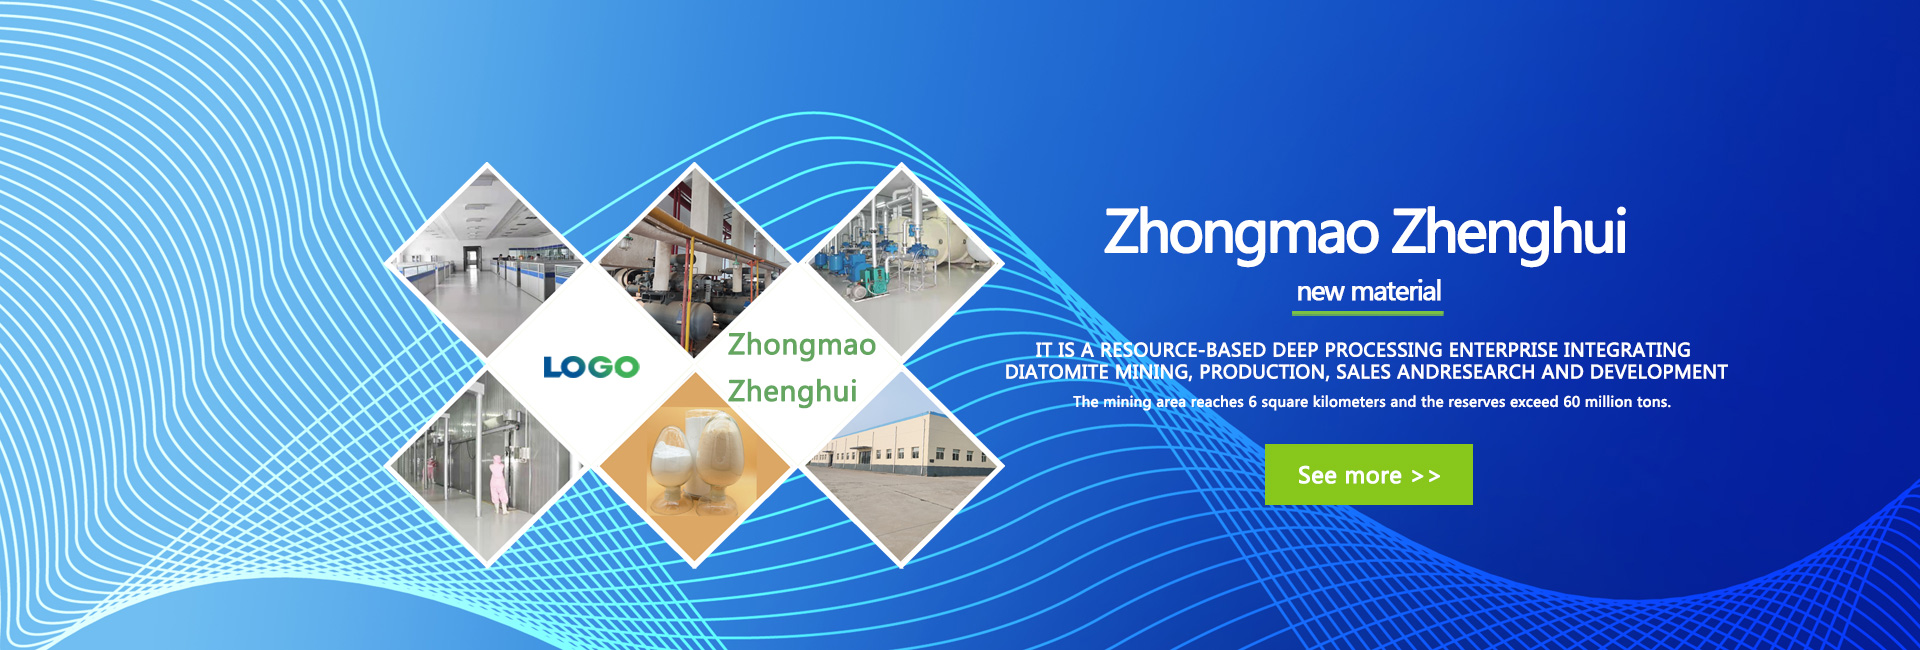 Dongying Zhongmao Zhenghui New Material Co., Ltd.